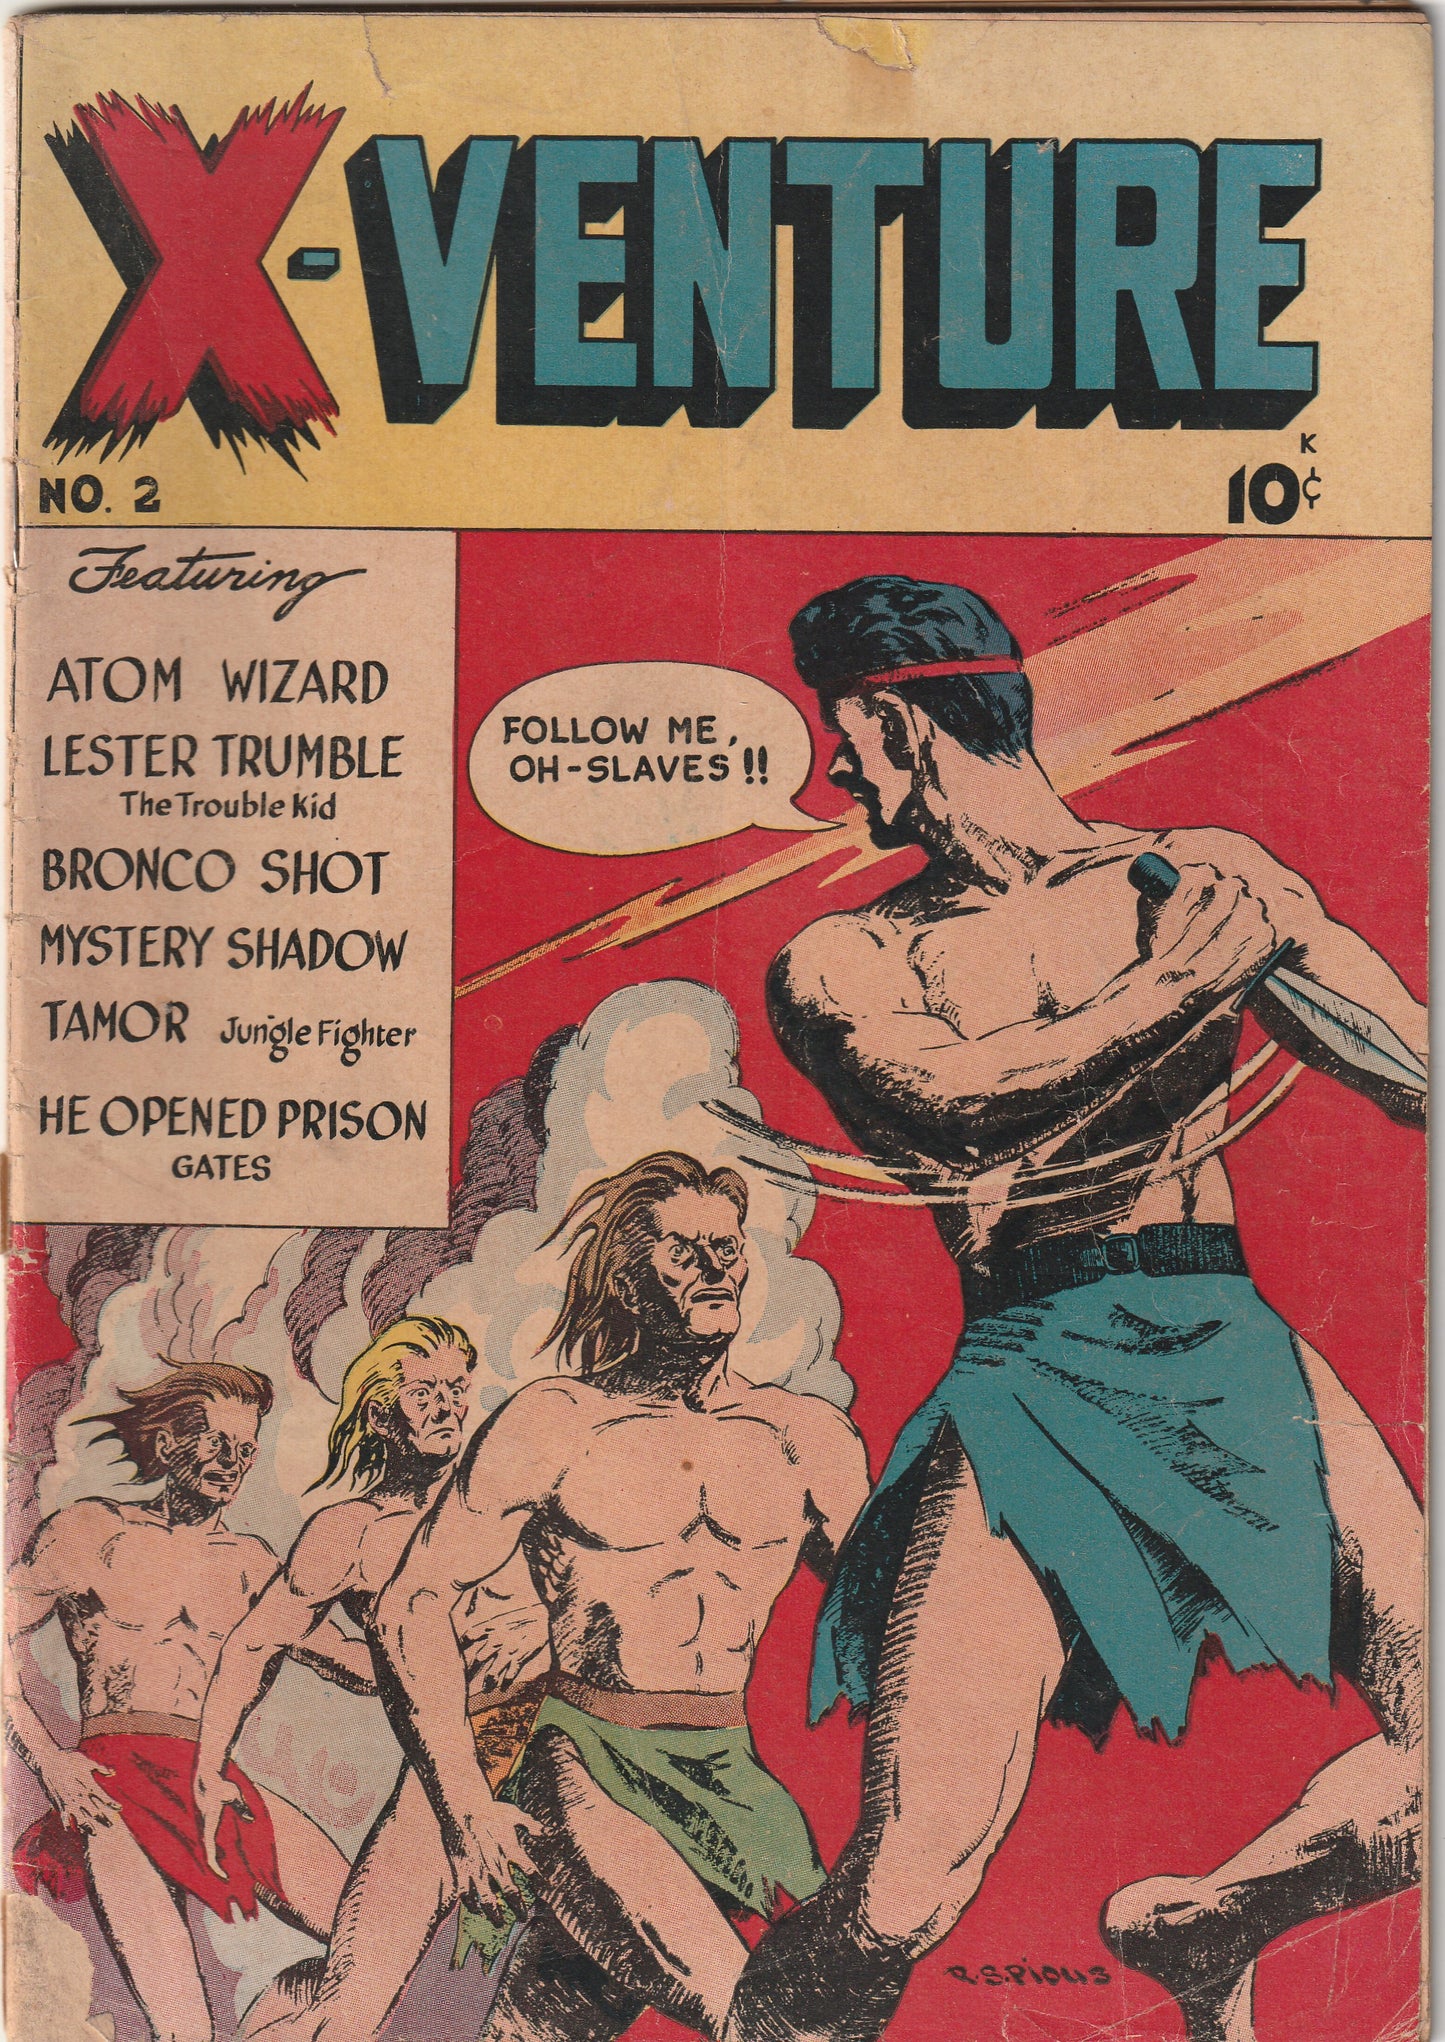 X-Venture #2 (1947)